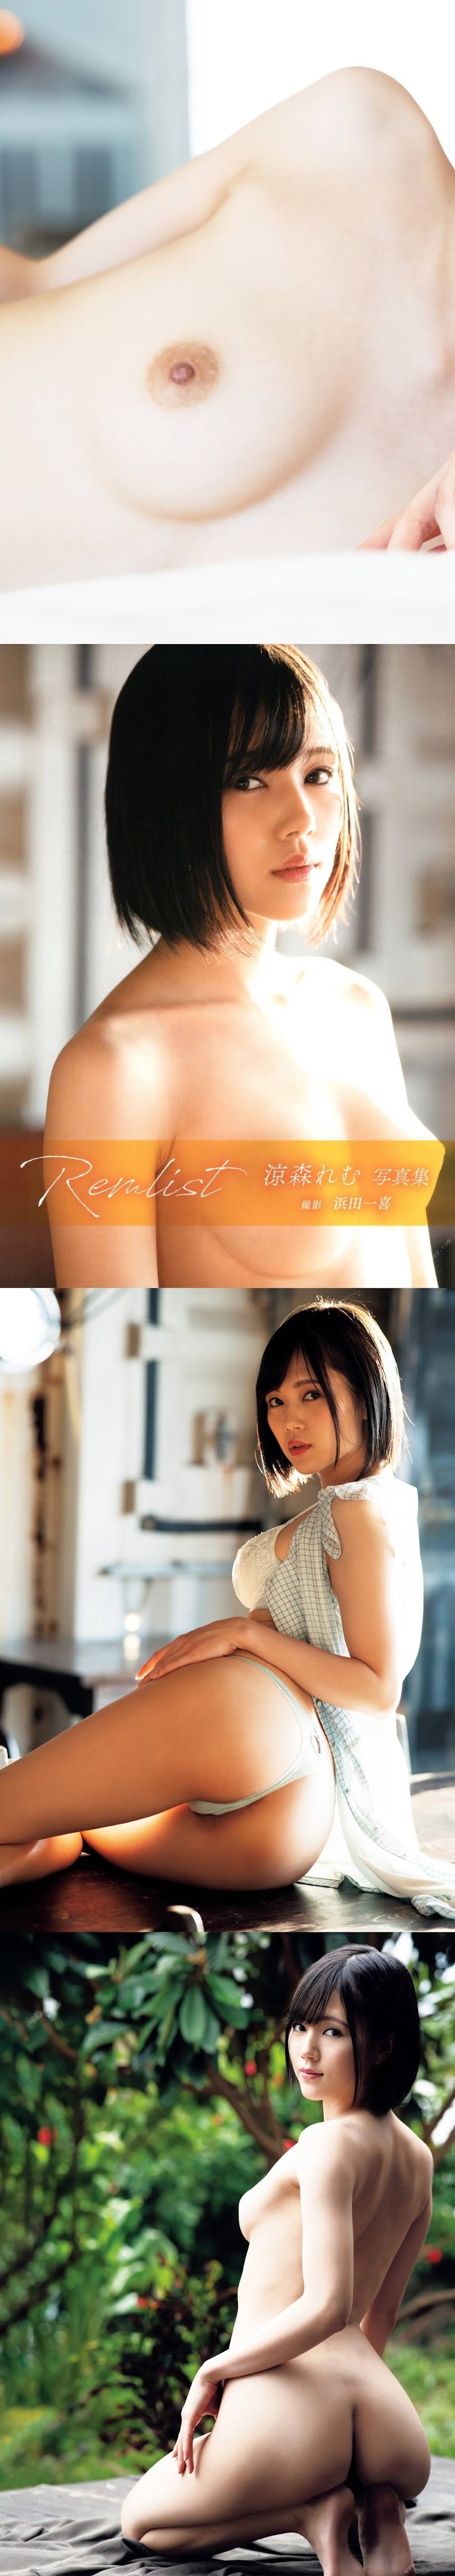 [Photobook] Remu Suzumori 涼森れむ - Remlist (2020-01-21)   P215302 P215302.rar-jk-